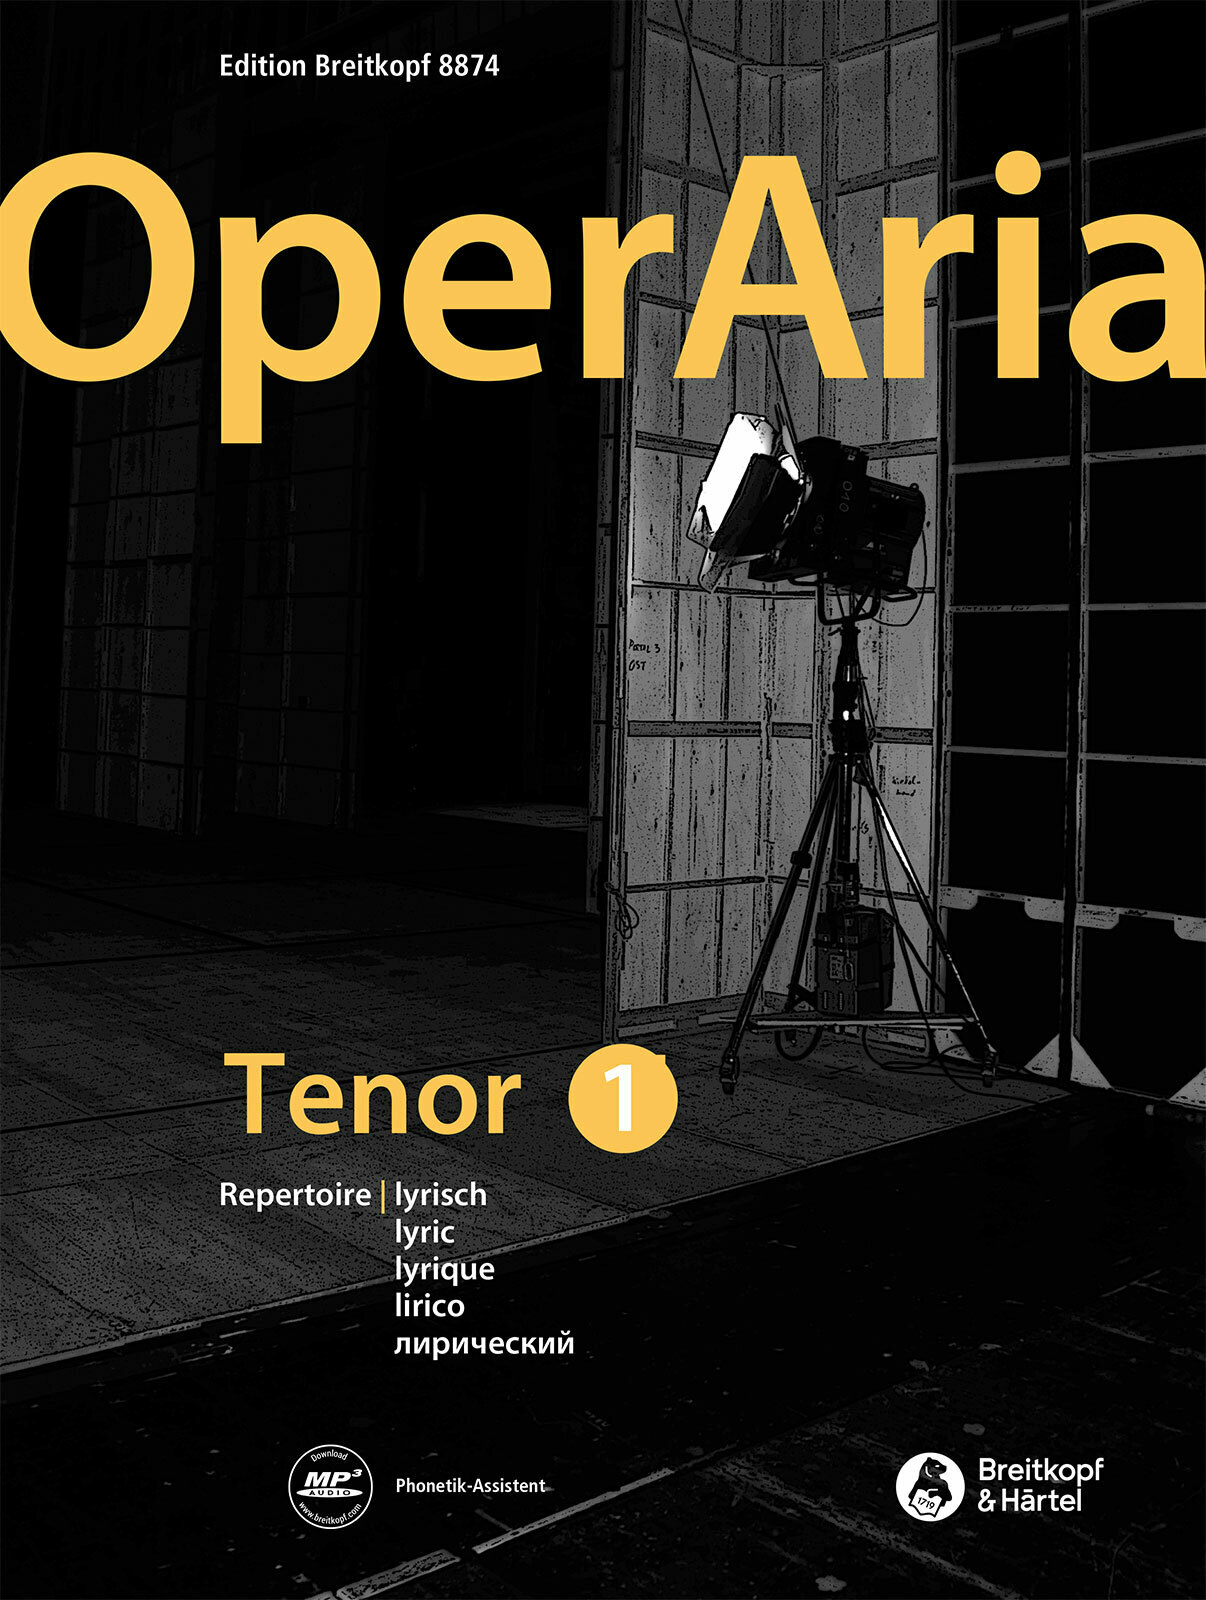 Operaria Tenor 1 Lyric Repertoire Sheet Music Songbook